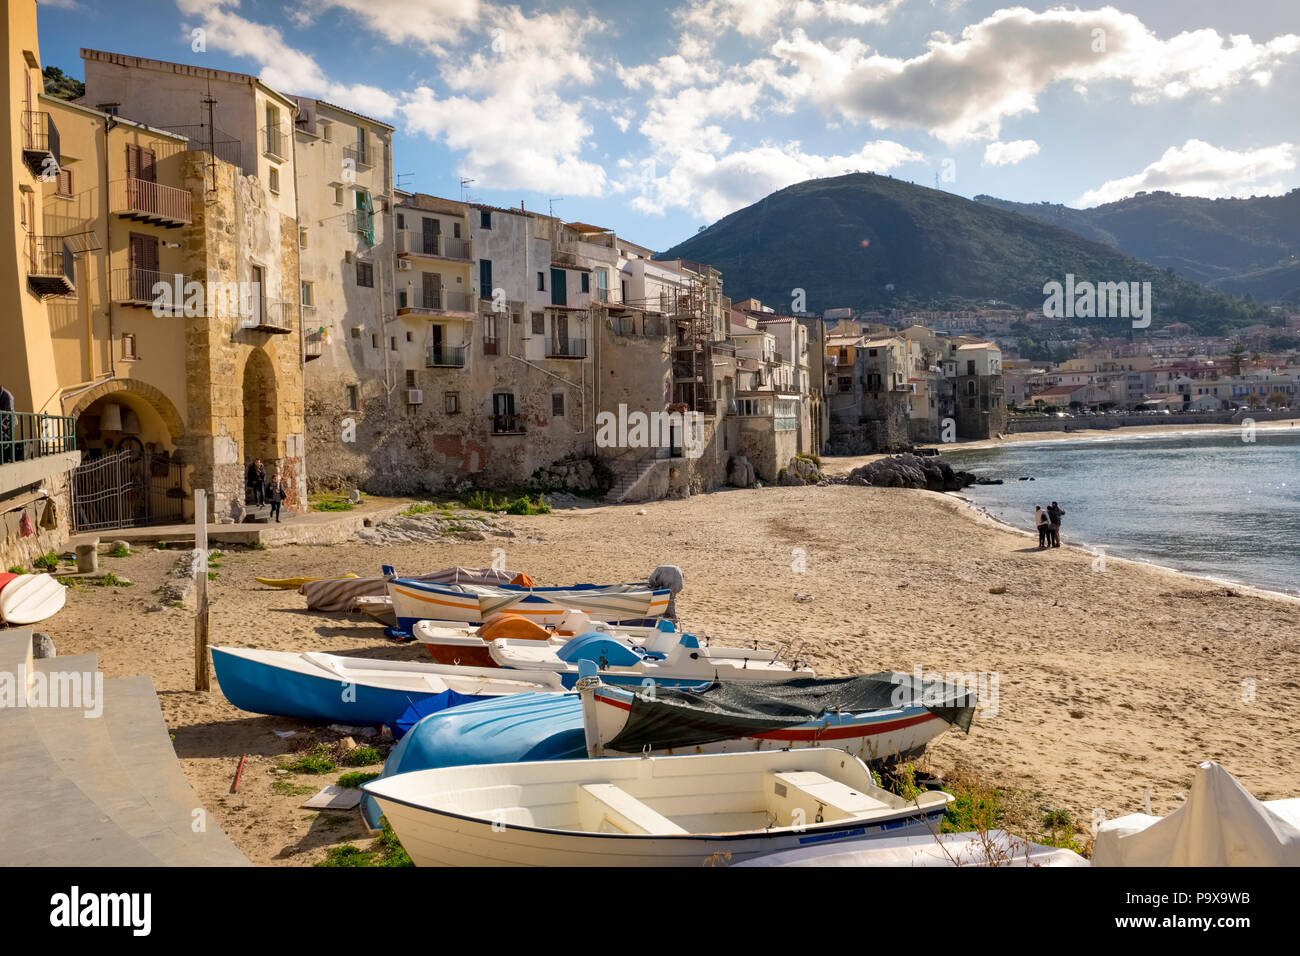 Sicilia, Italia - playa medieval con casas de pescadores en la playa de la ciudad Cefalu, Sicilia Foto de stock